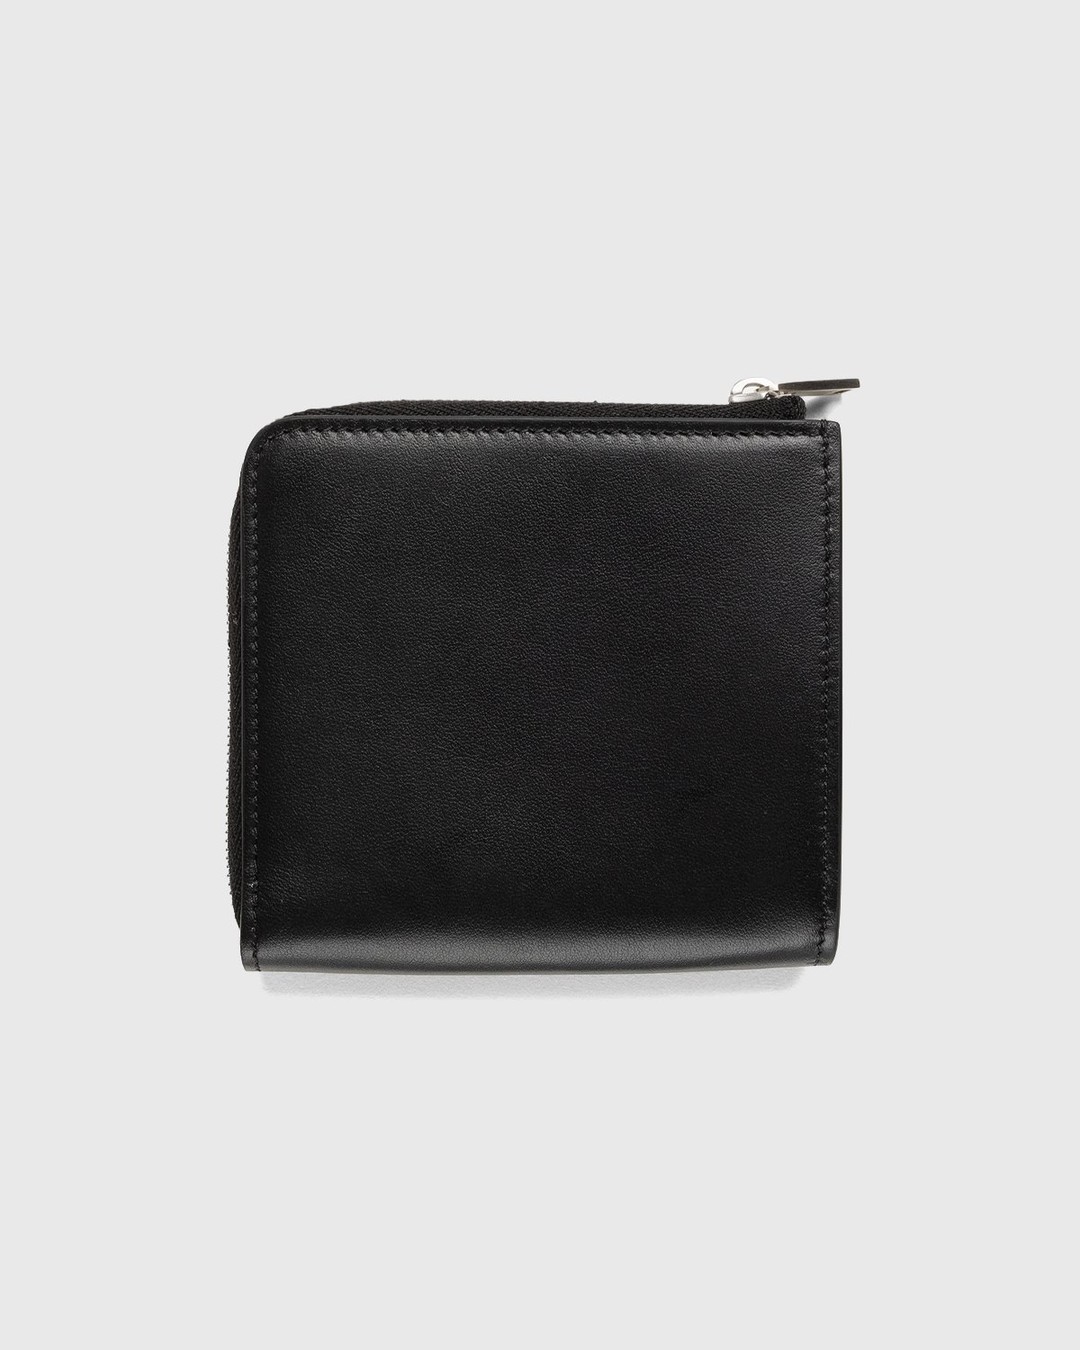 Jil Sander – Leather Card Wallet Black - Wallets - Black - Image 2